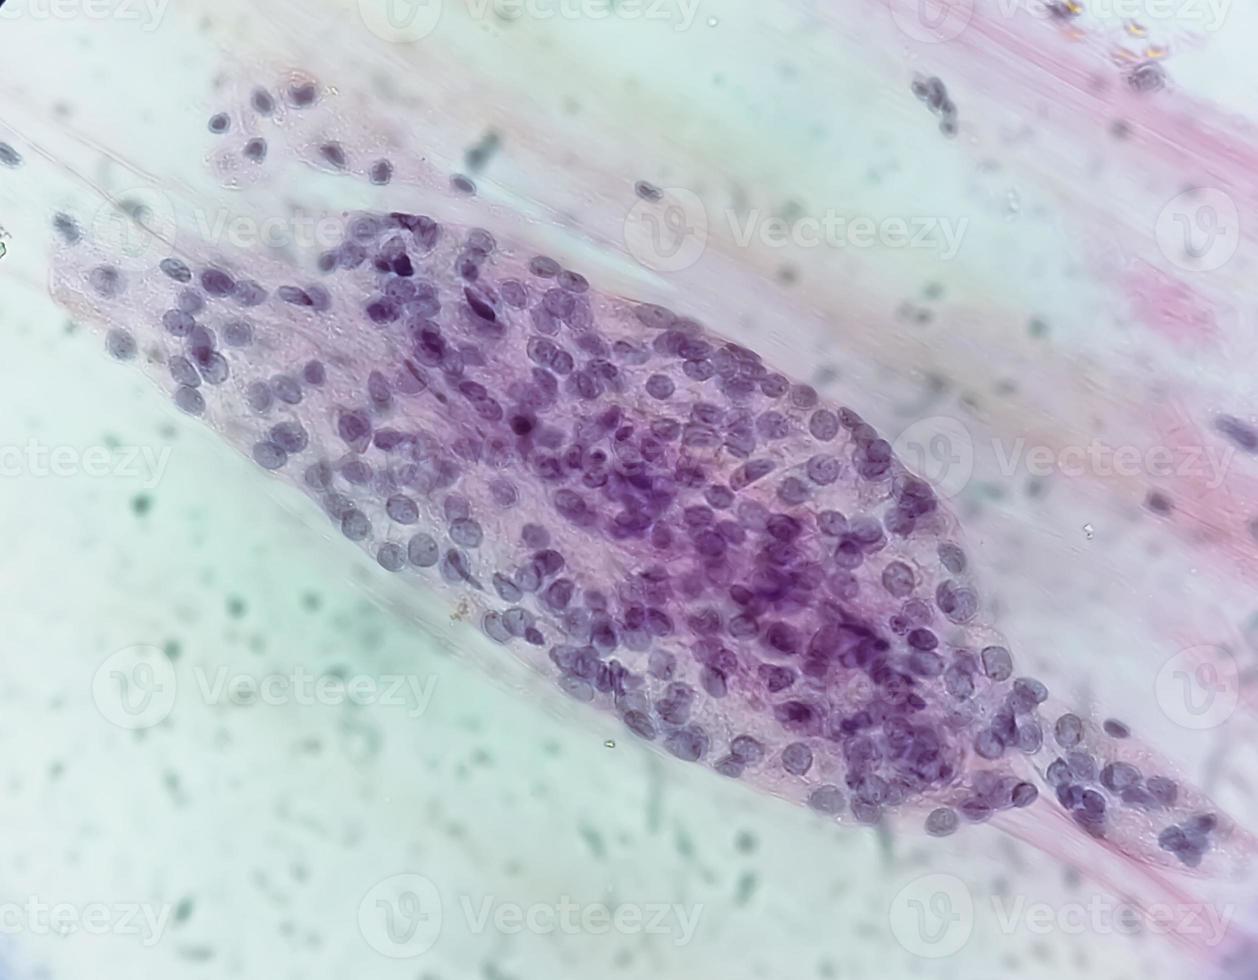 mikroskopisk se av trichomonas vaginalis i pap smeta med få akut inflammatorisk celler. foto